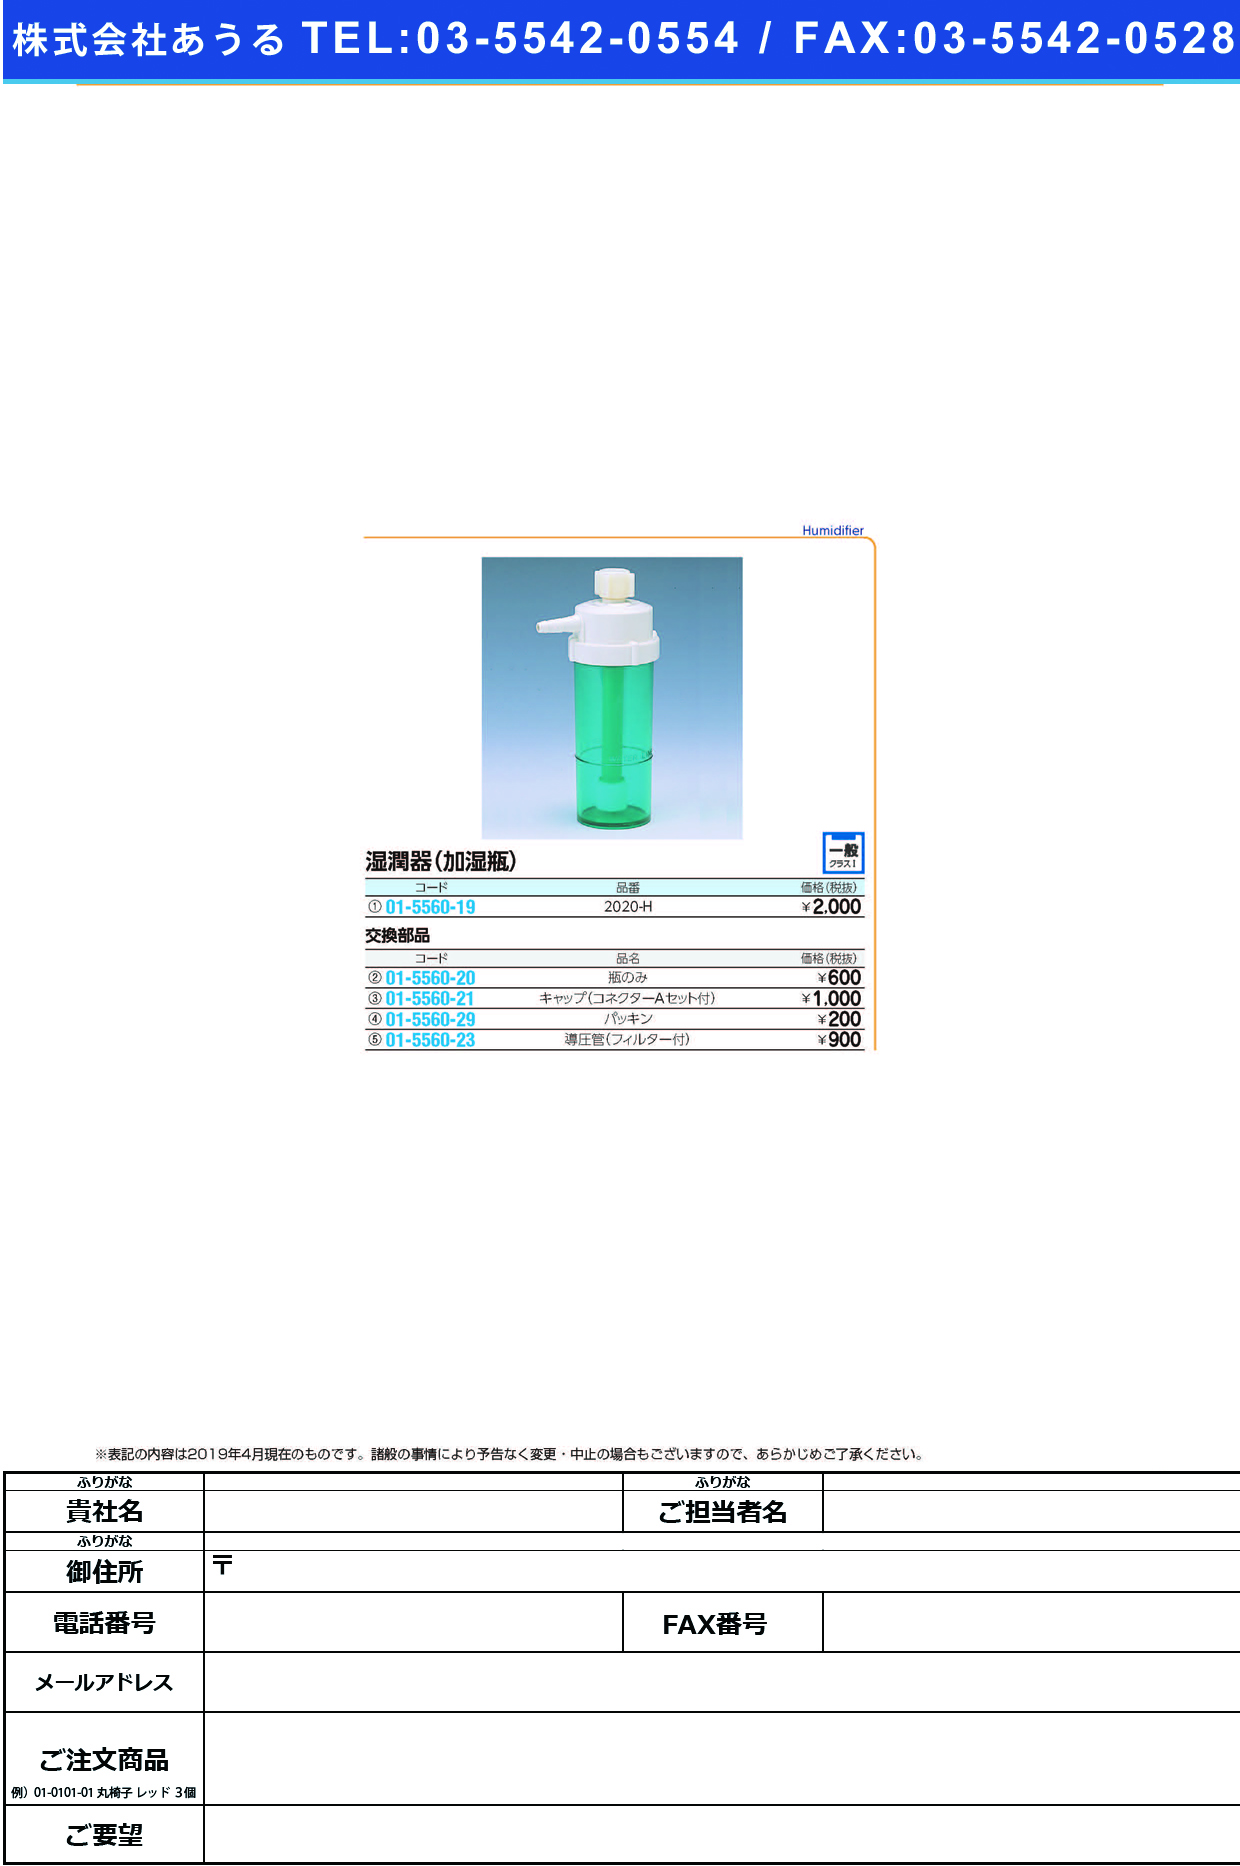 (01-5560-23)加湿瓶用導圧管（フィルター付） 2020-Hﾖｳ ｶｼﾂﾋﾞﾝﾖｳﾄﾞｳｱﾂｶﾝ(ブルークロス・エマージェンシー)【1個単位】【2019年カタログ商品】